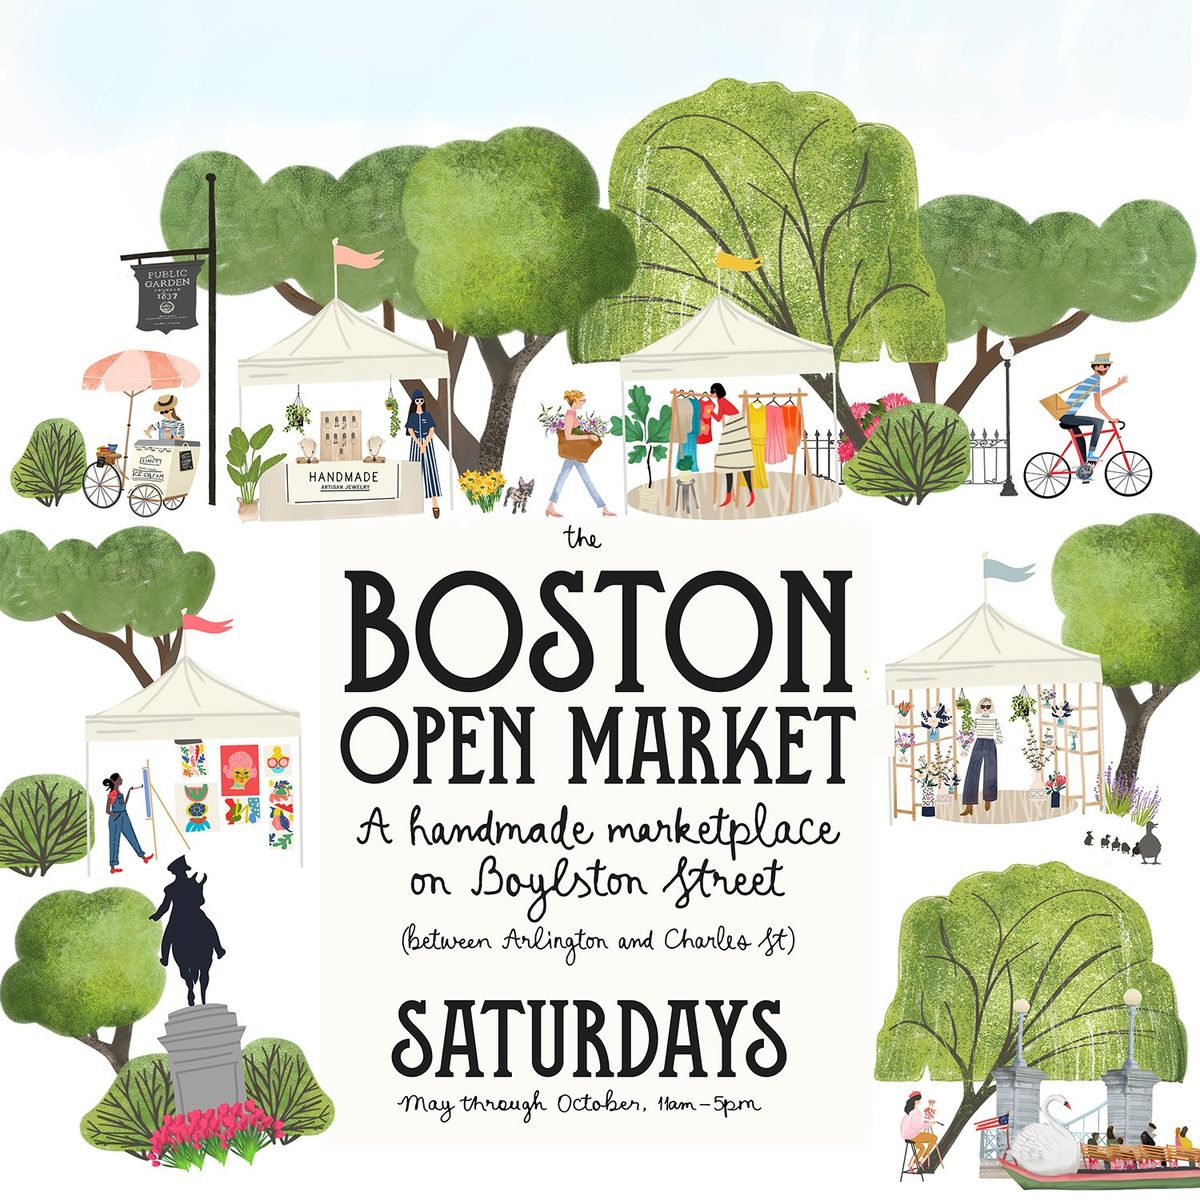 Boston Open Market - A Handmade Marketplace on Boylston Street